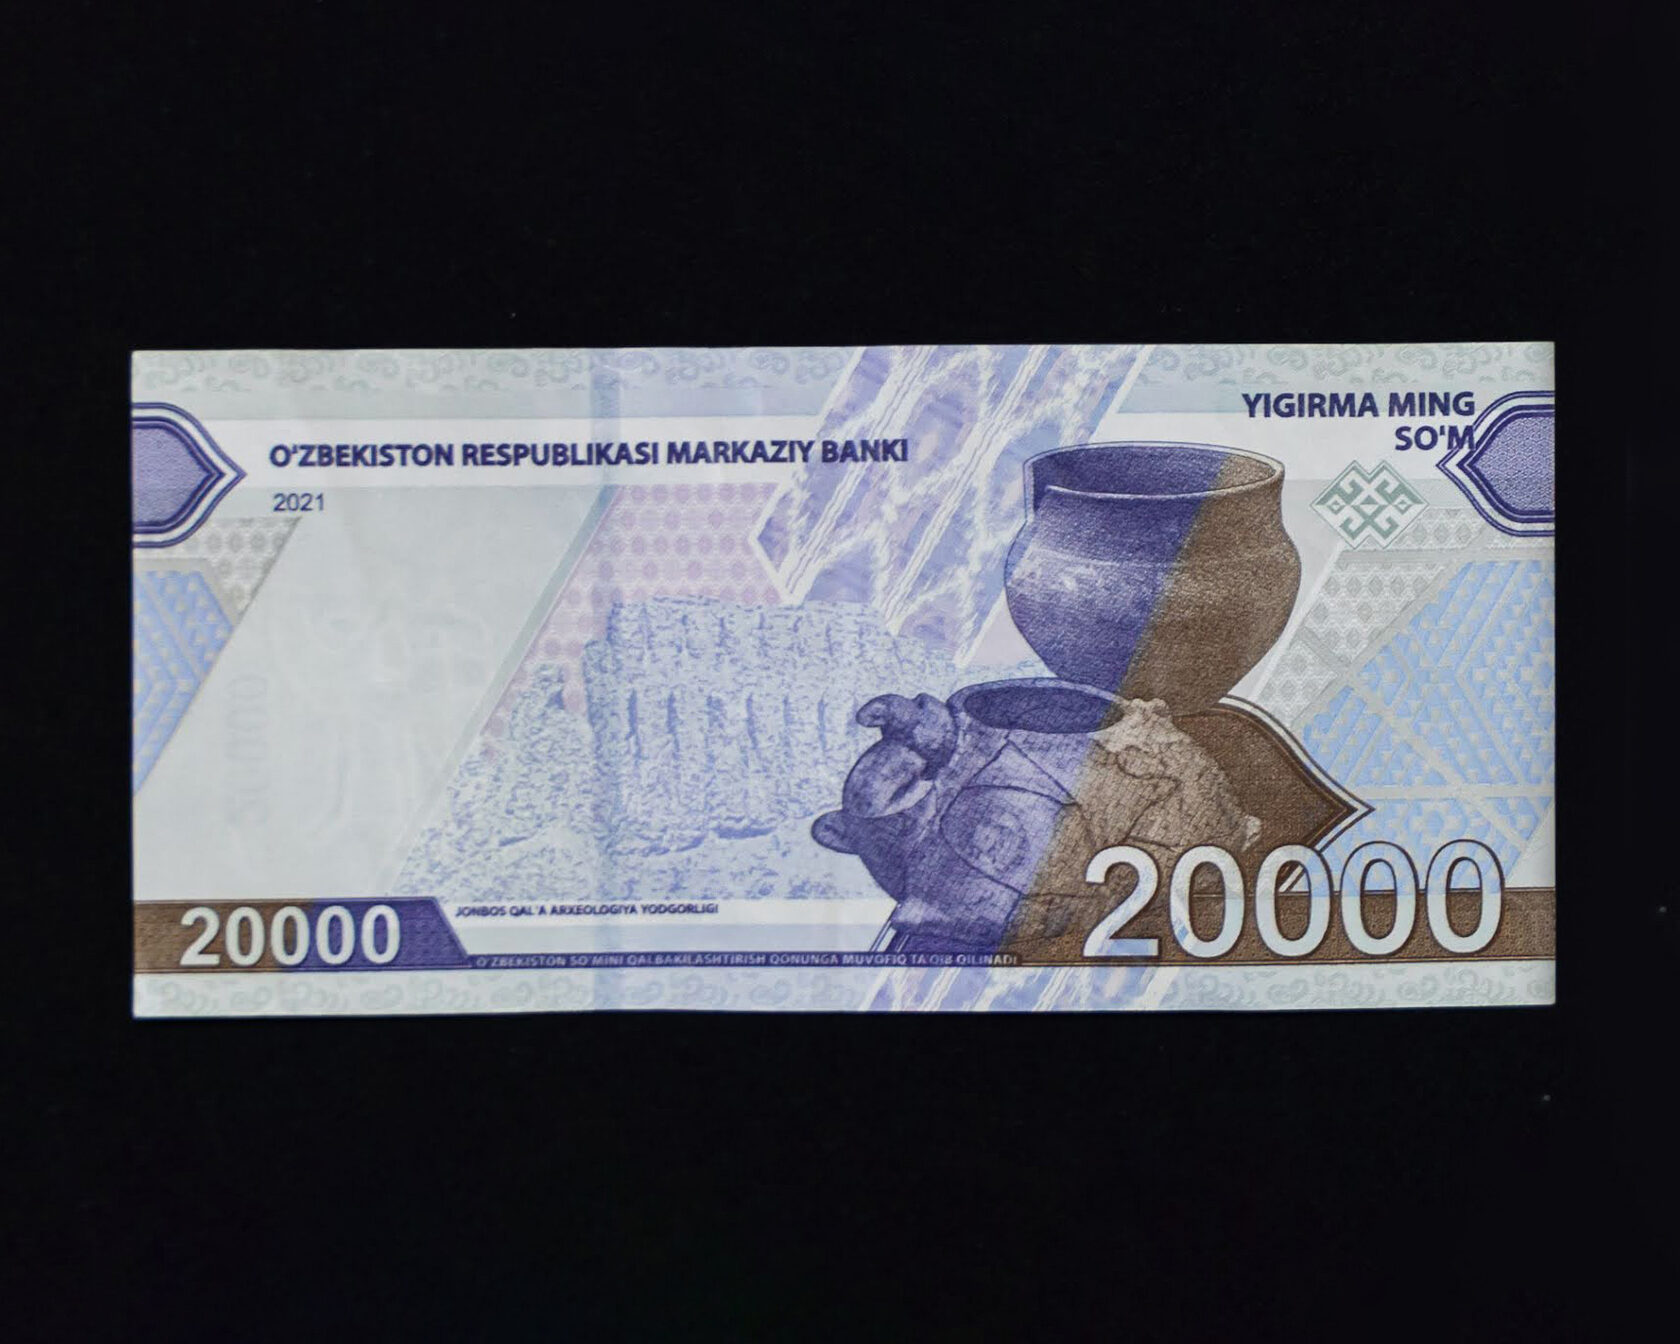 10 тысяч рублей в сумах узбекских сегодня